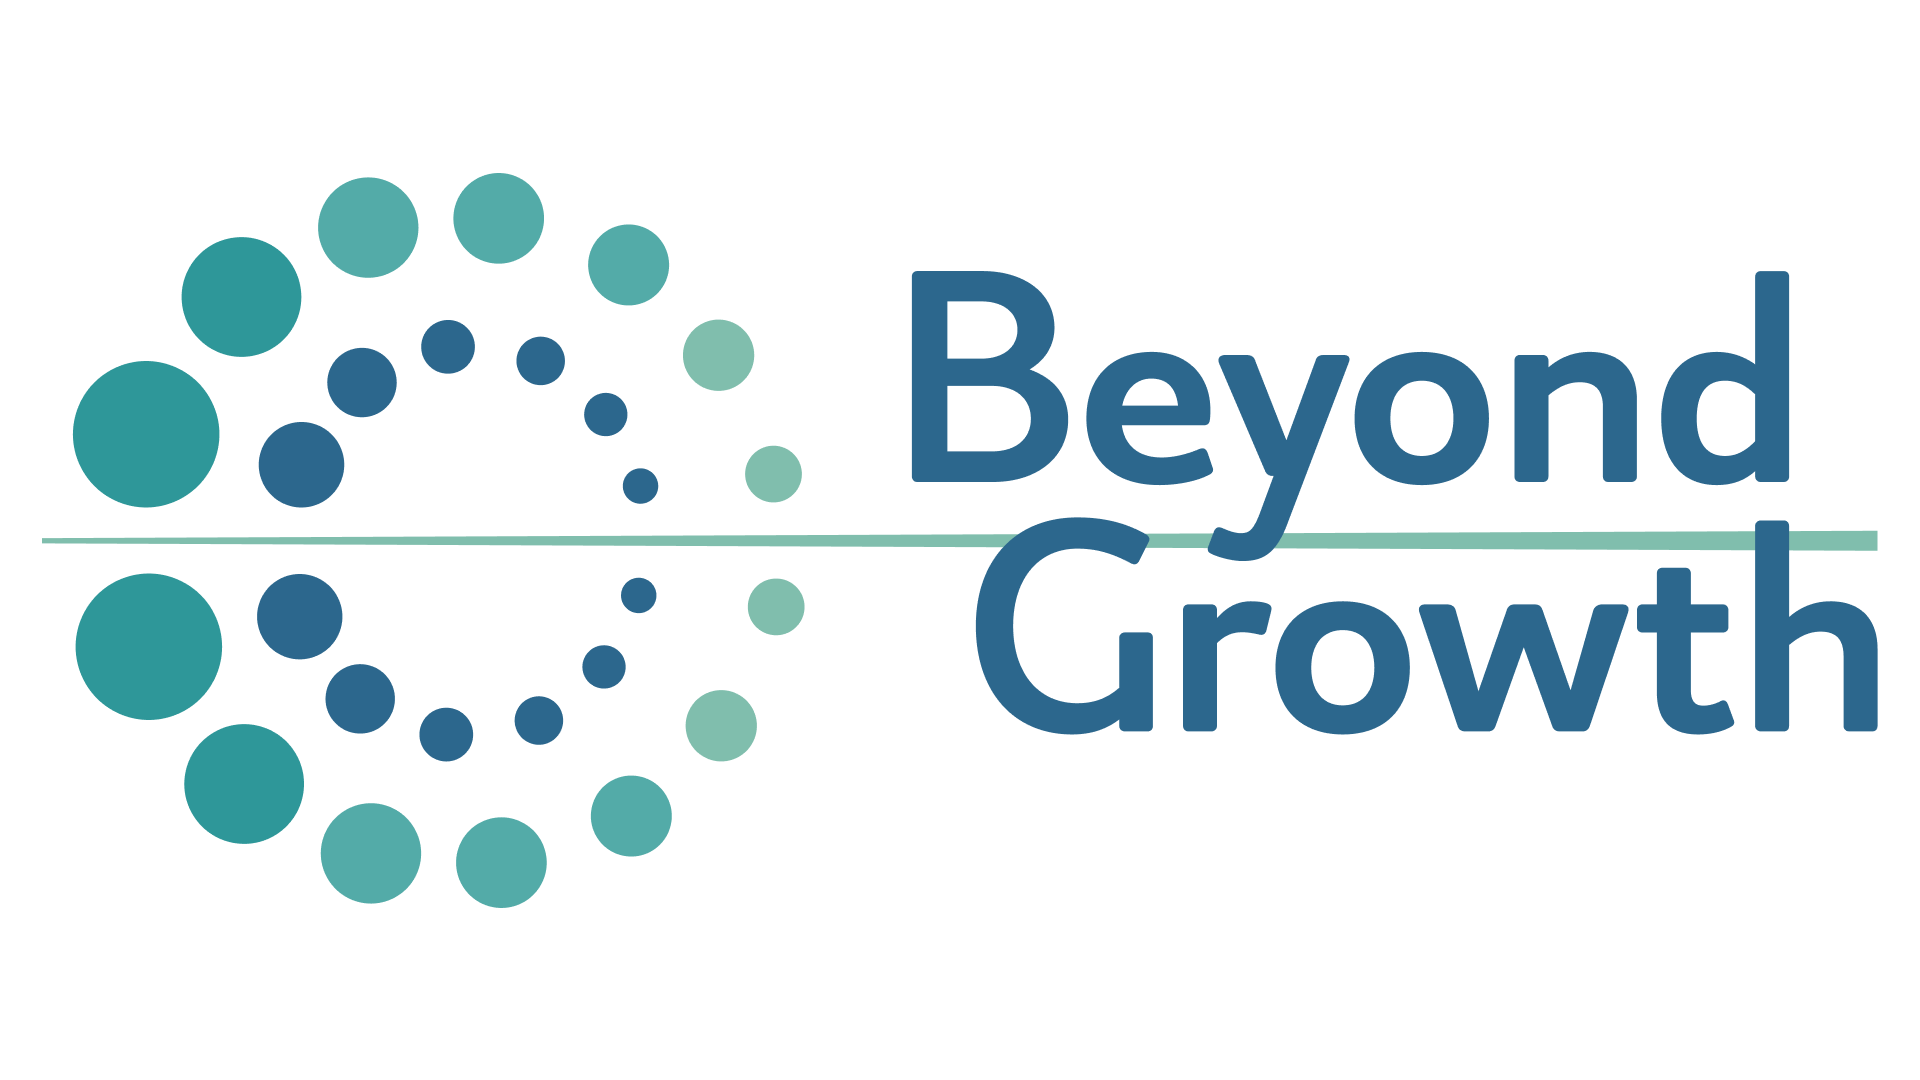 BEYOND GROWTH